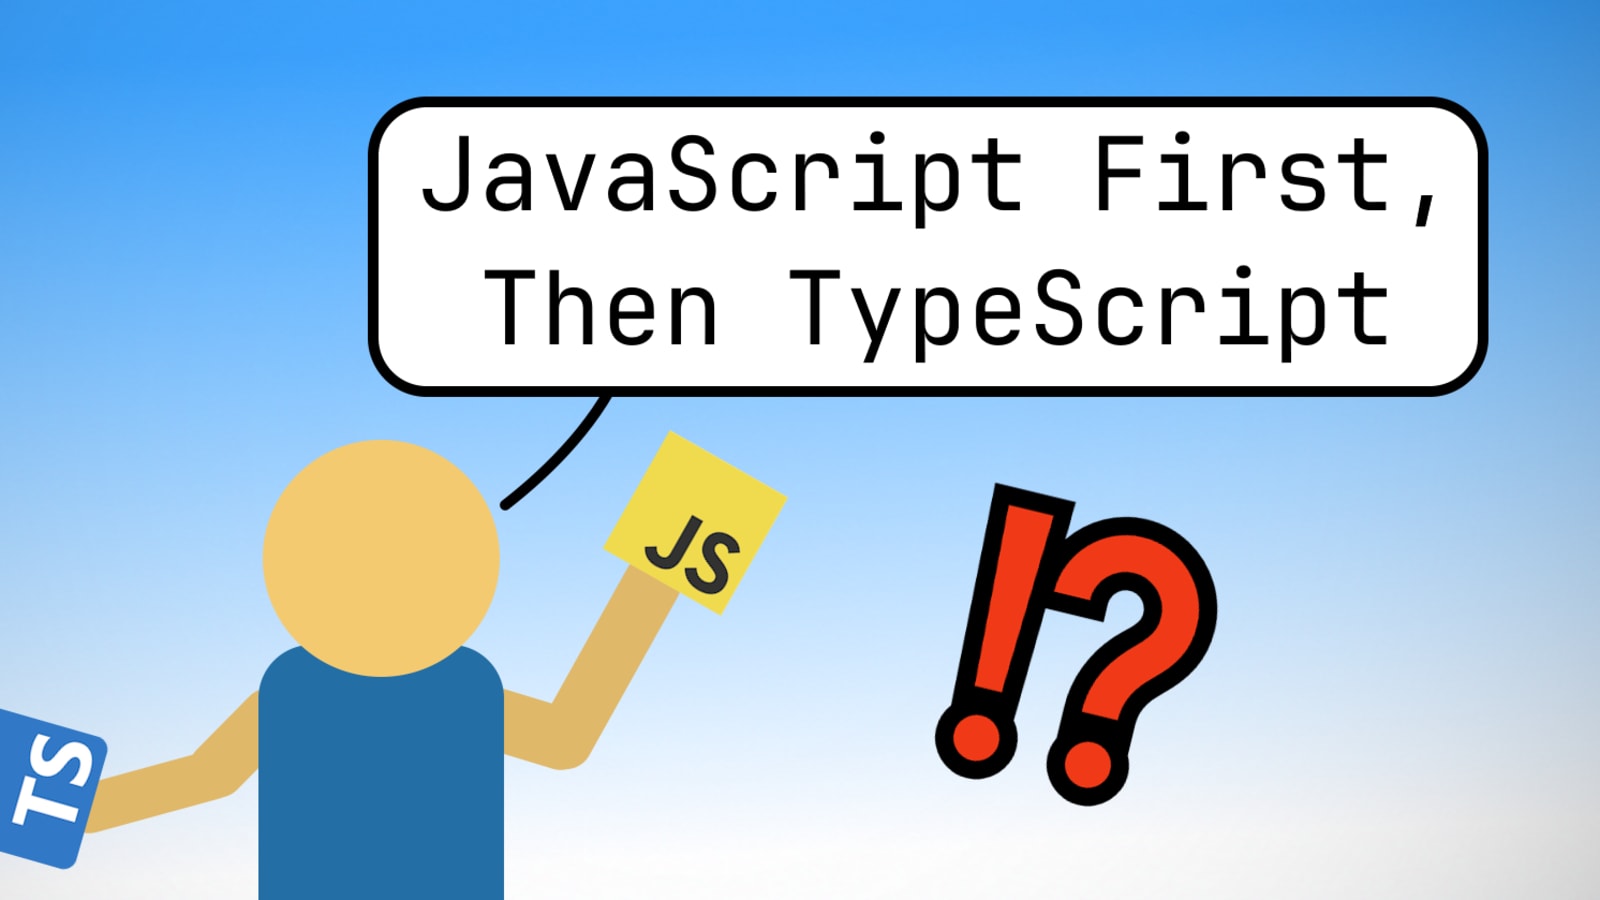 TypeScript advanced types. Diving a little deeper into typescript